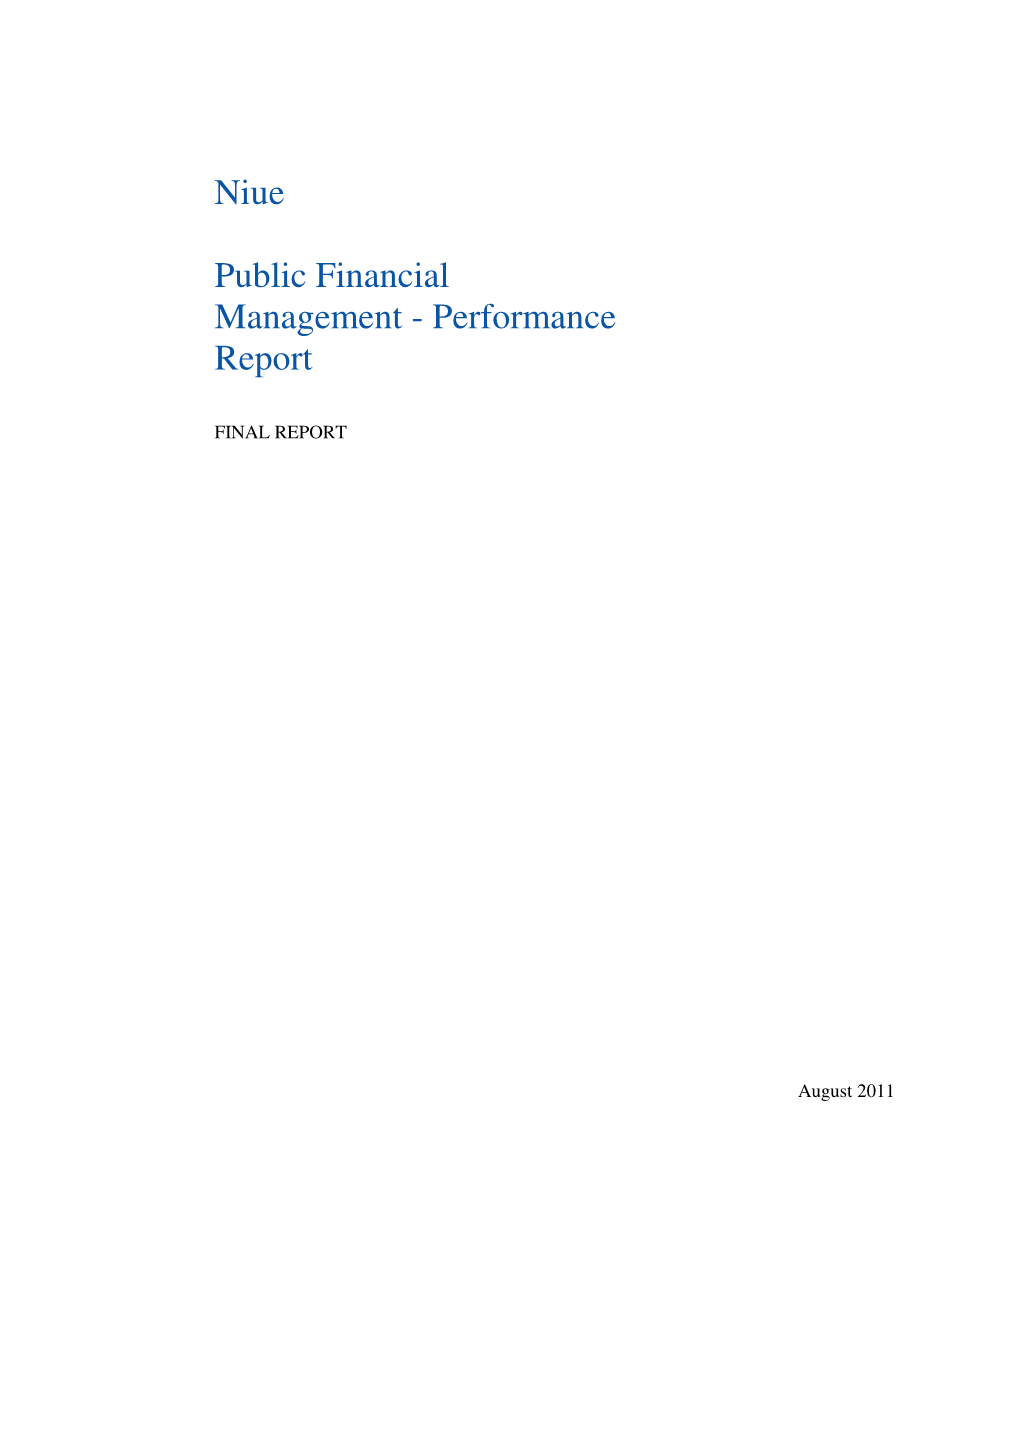 Niue Public Financial Management